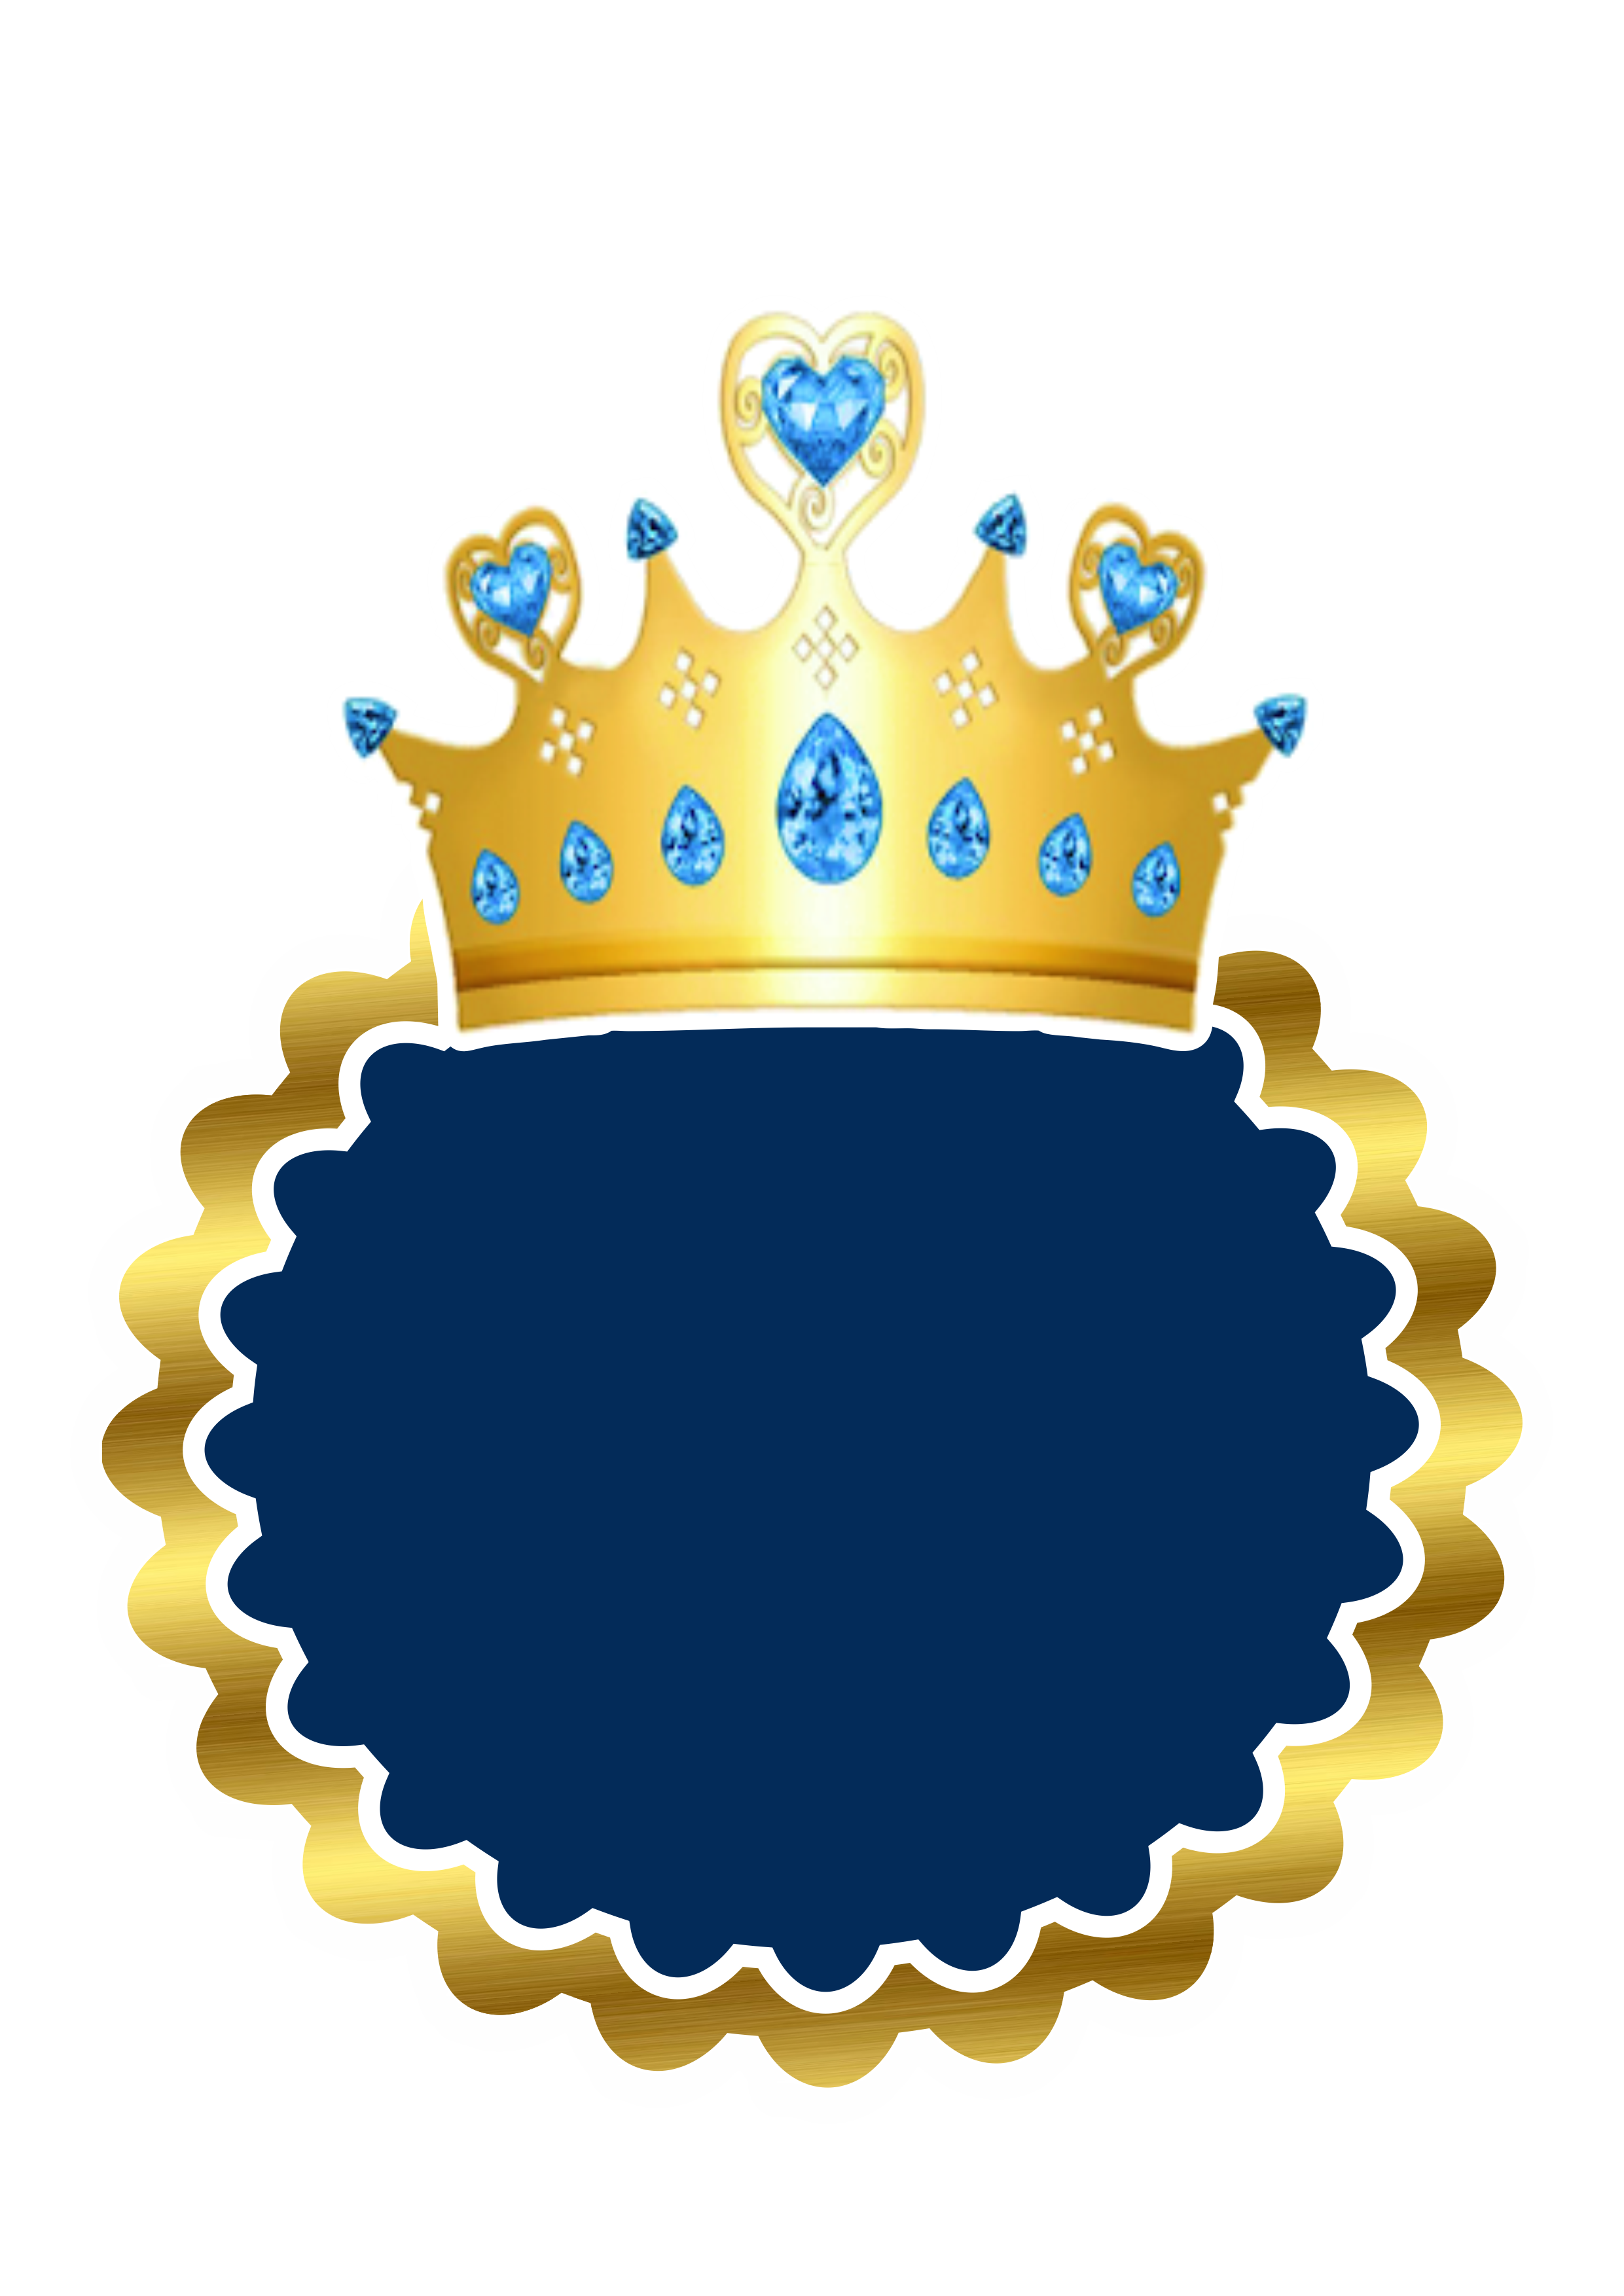 Topo de bolo dourado com azul com coroa realeza artes gráficas png